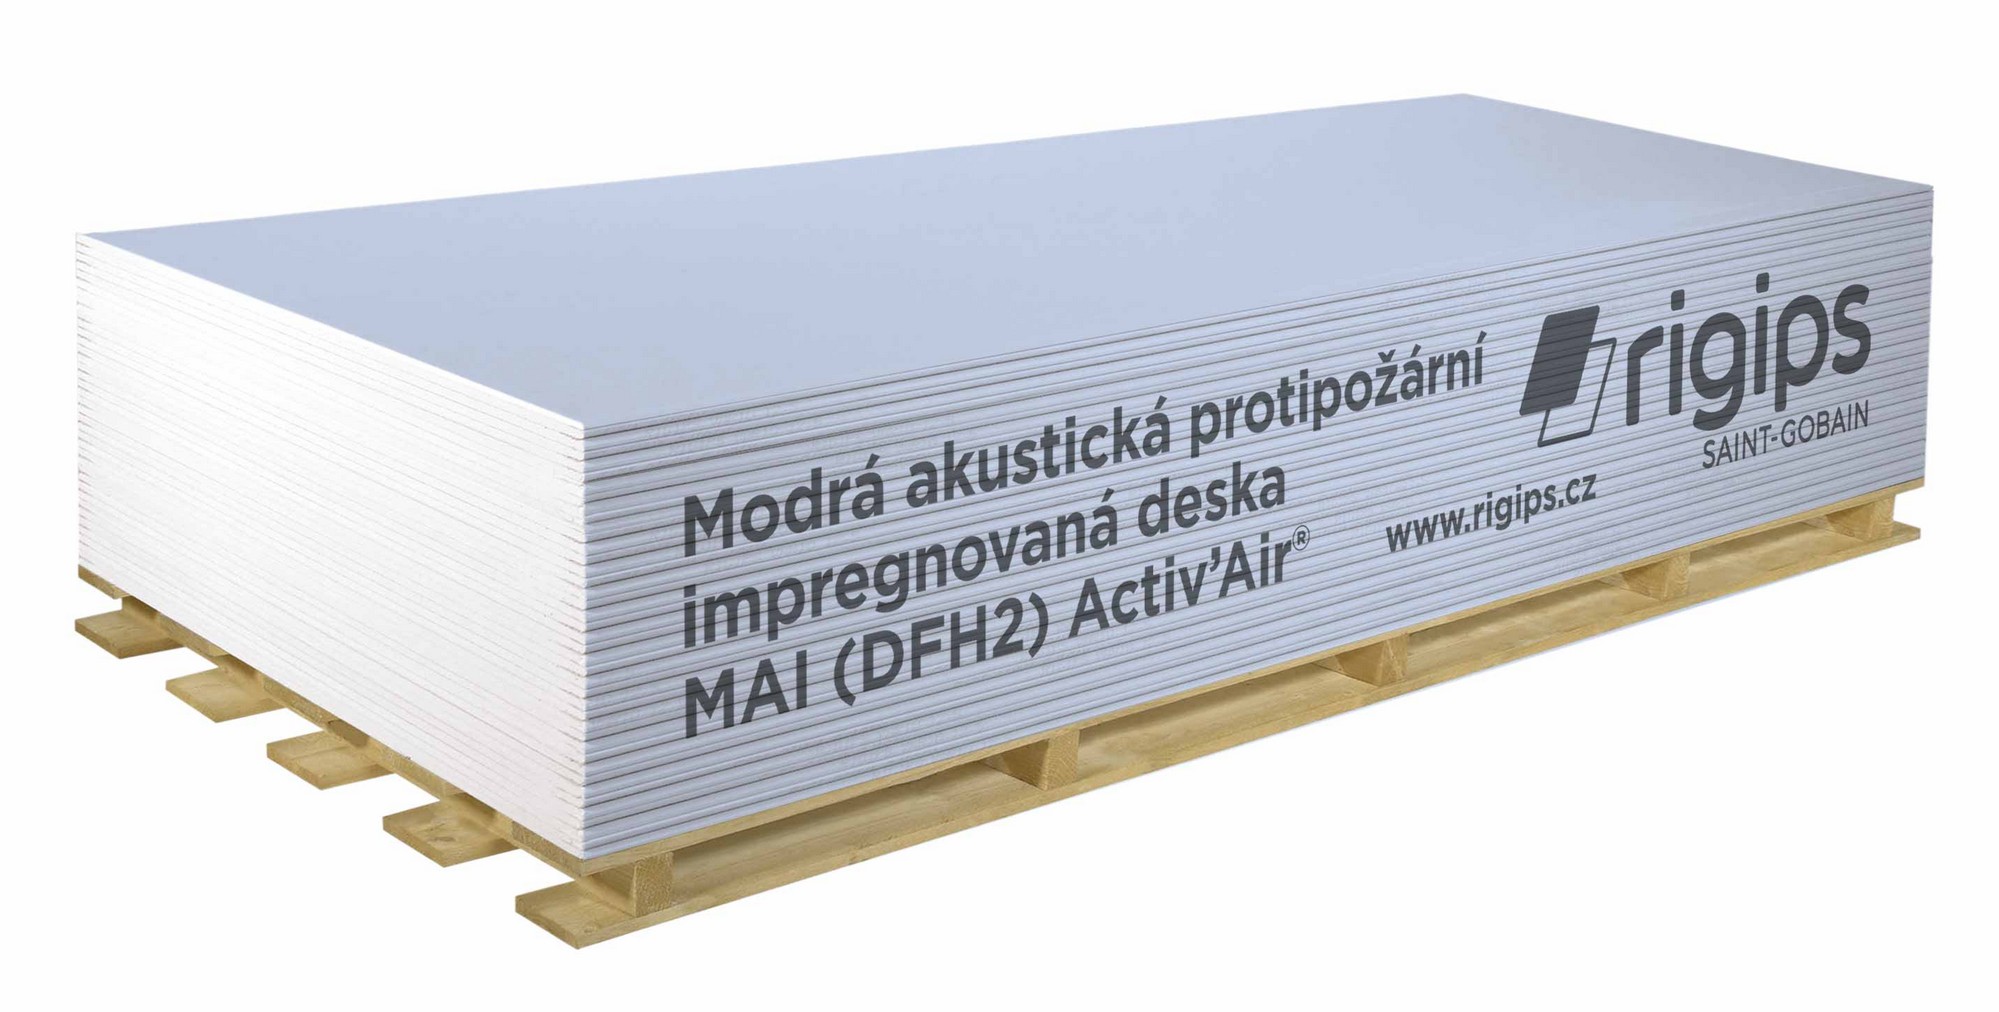 Deska sádrokartonová Rigips MAI (DFH2) Activ' Air 12,5×1250×2000 mm